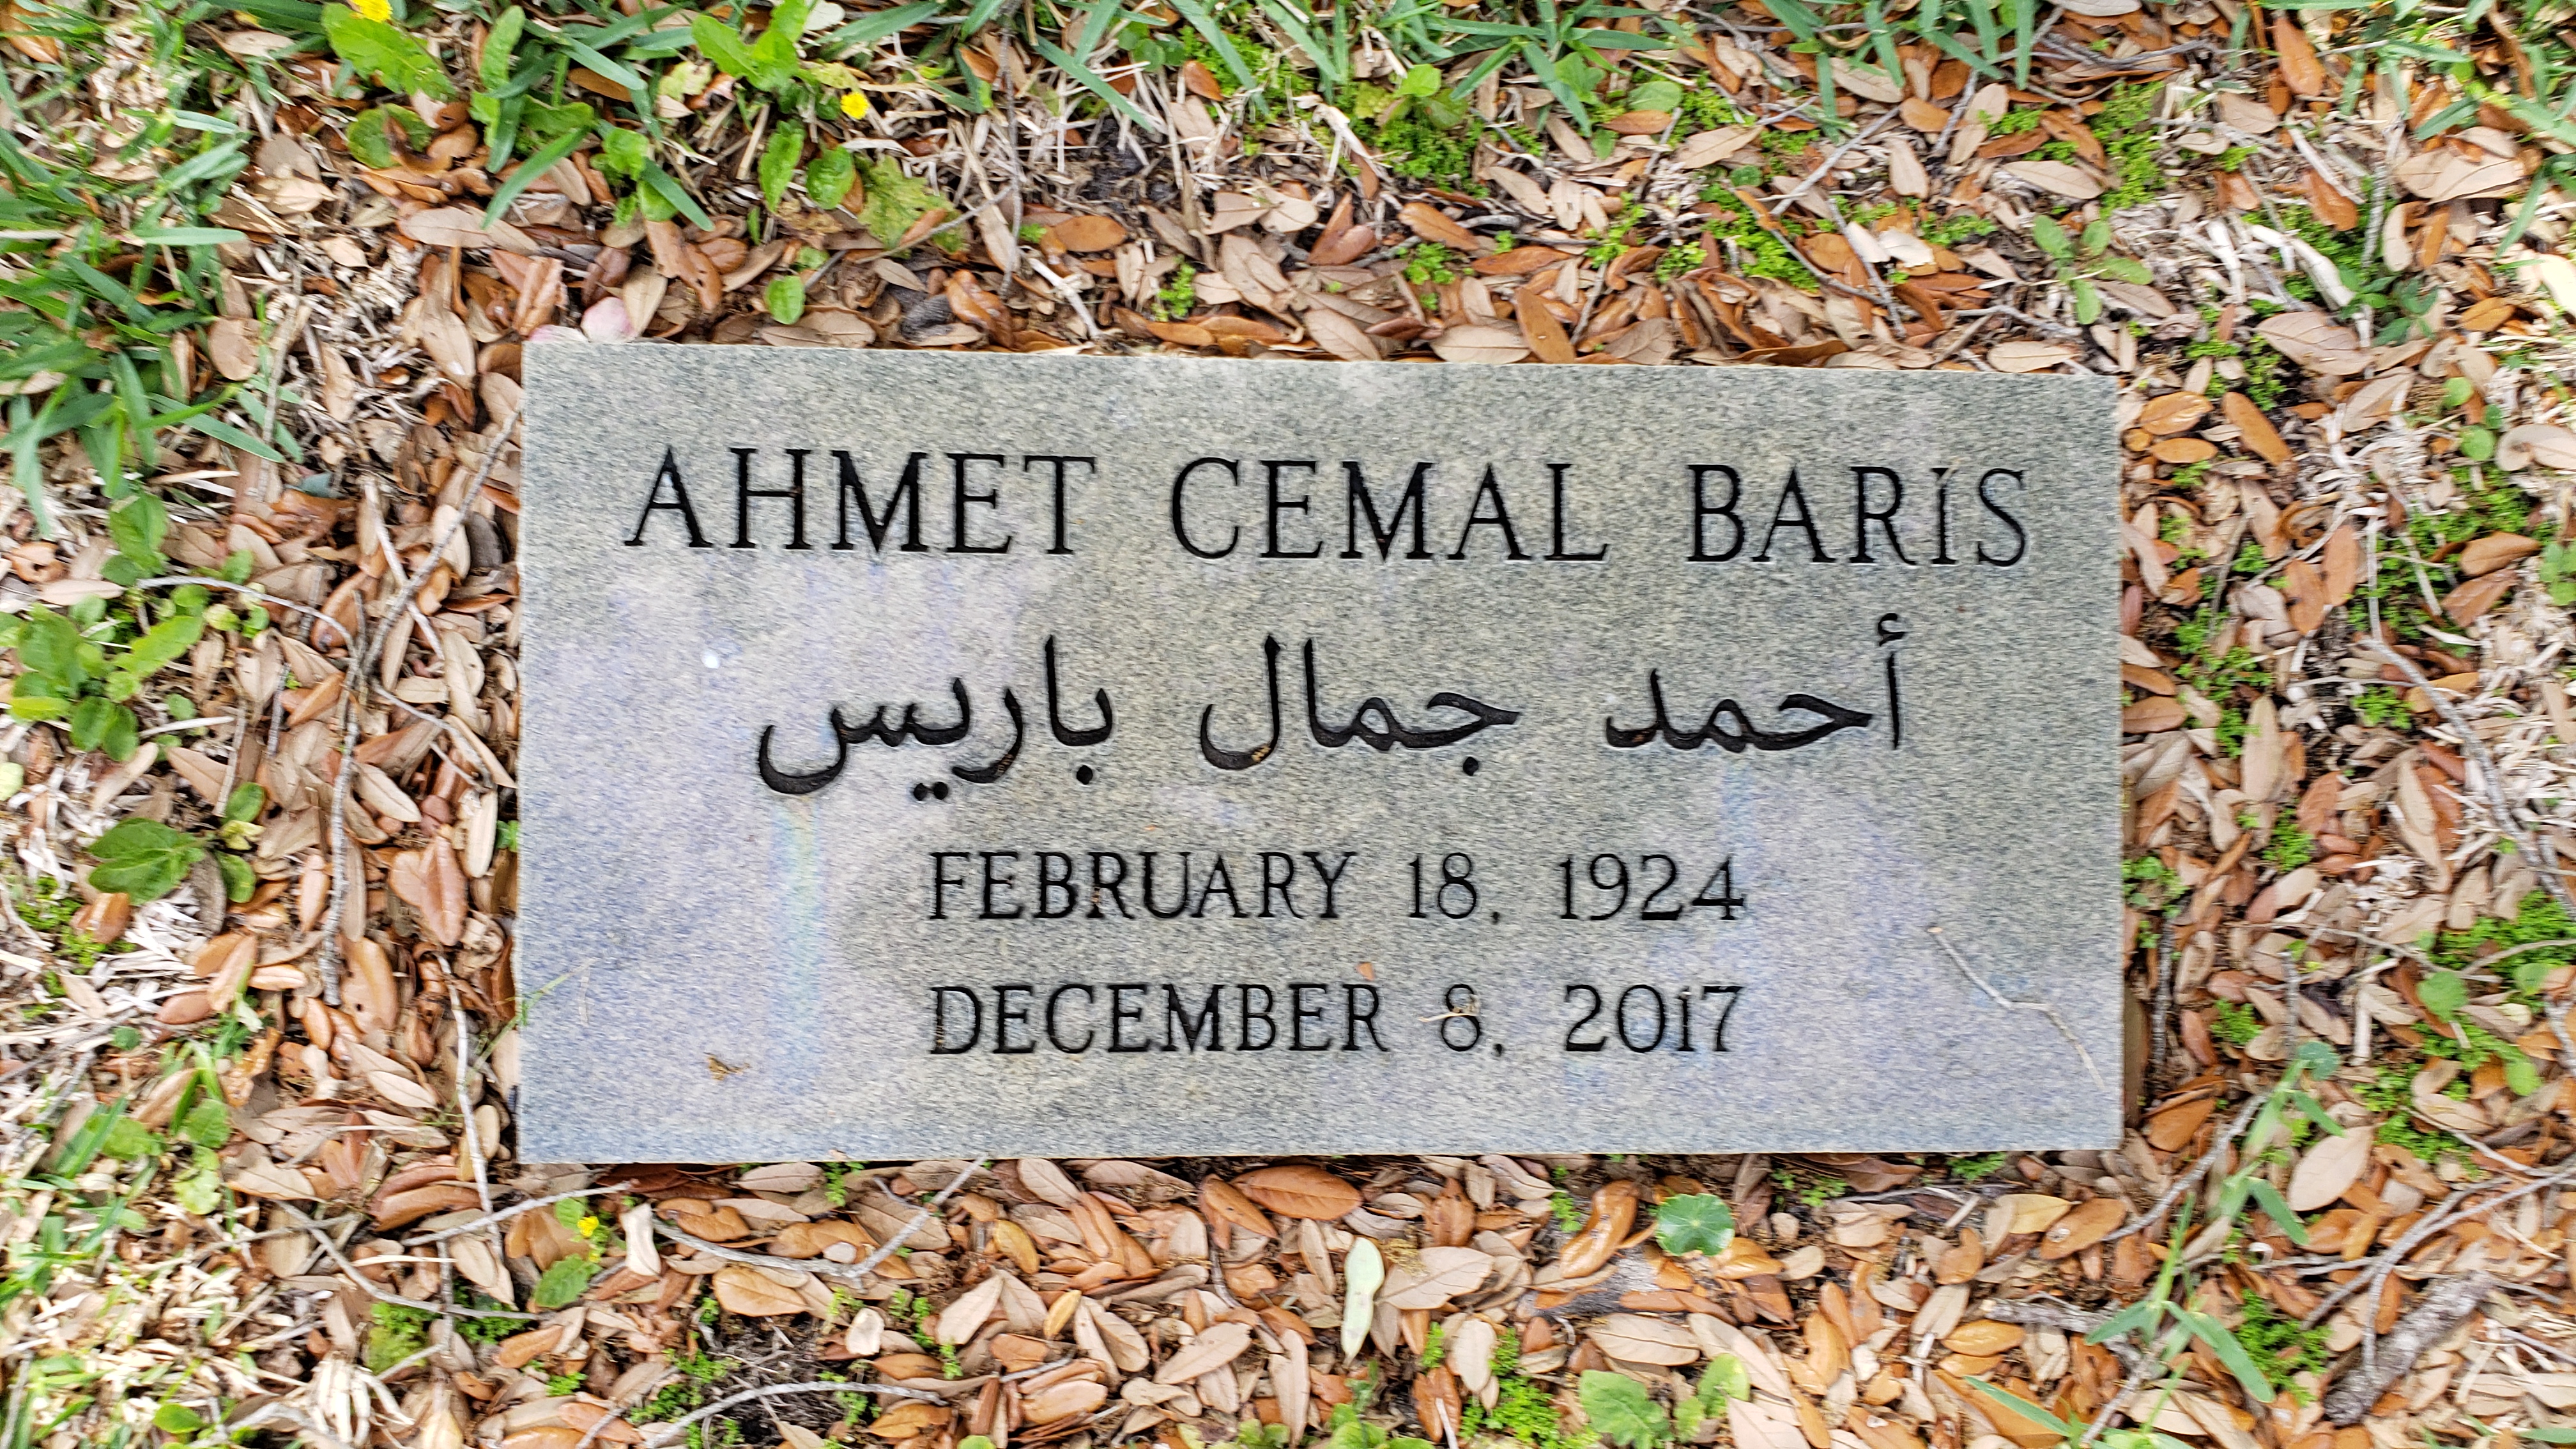 Ahmet Cemal Baris